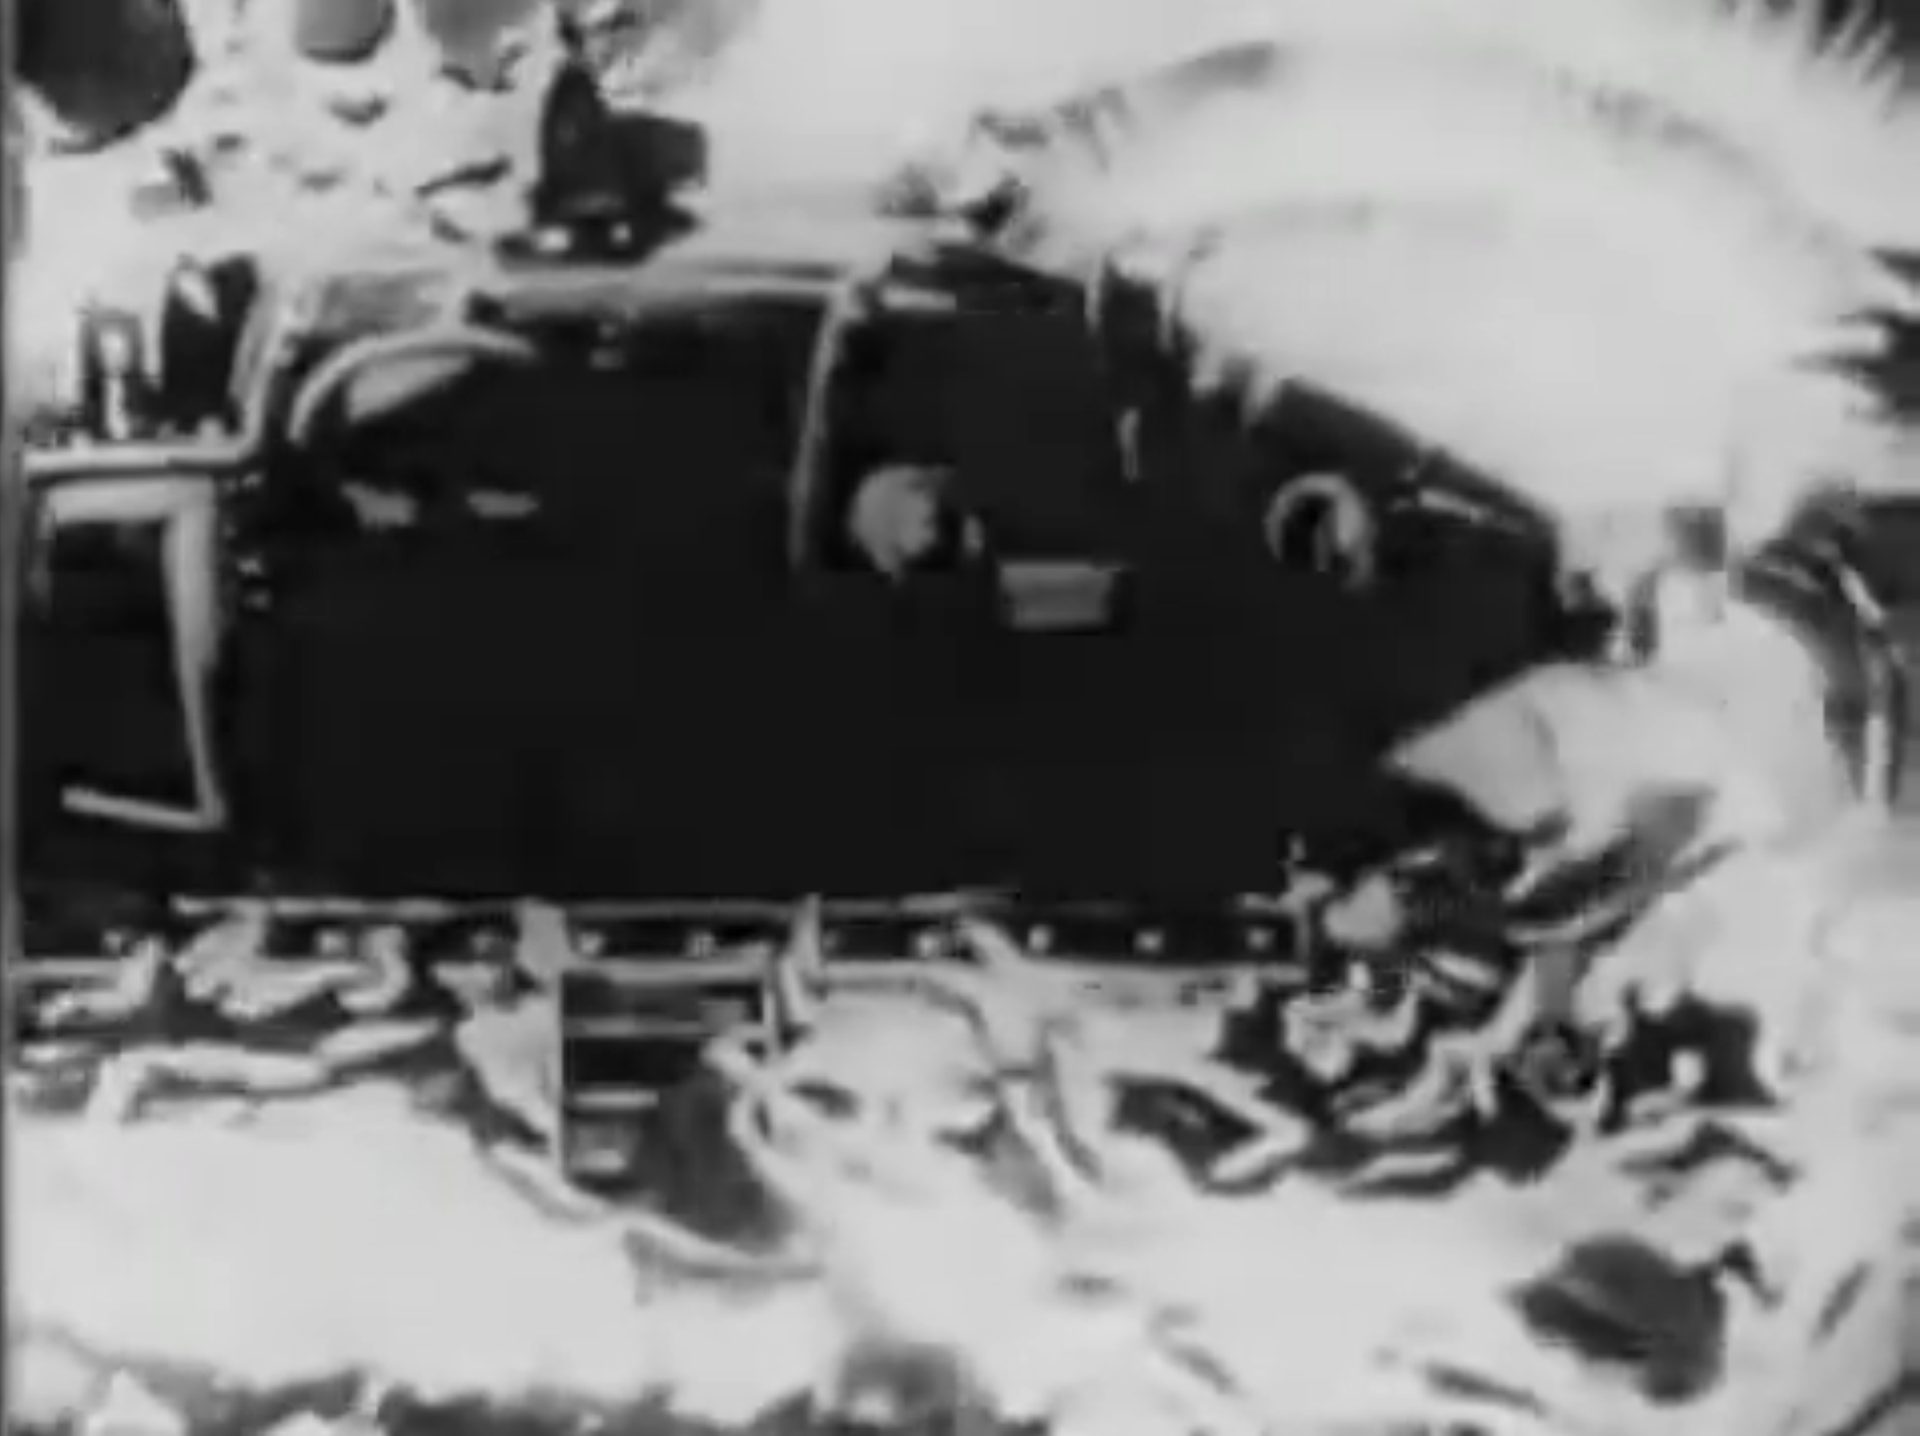 Primitiv wirkende Schwarz-Weiß-Aufnahme eines futuristischen U-Bootes.